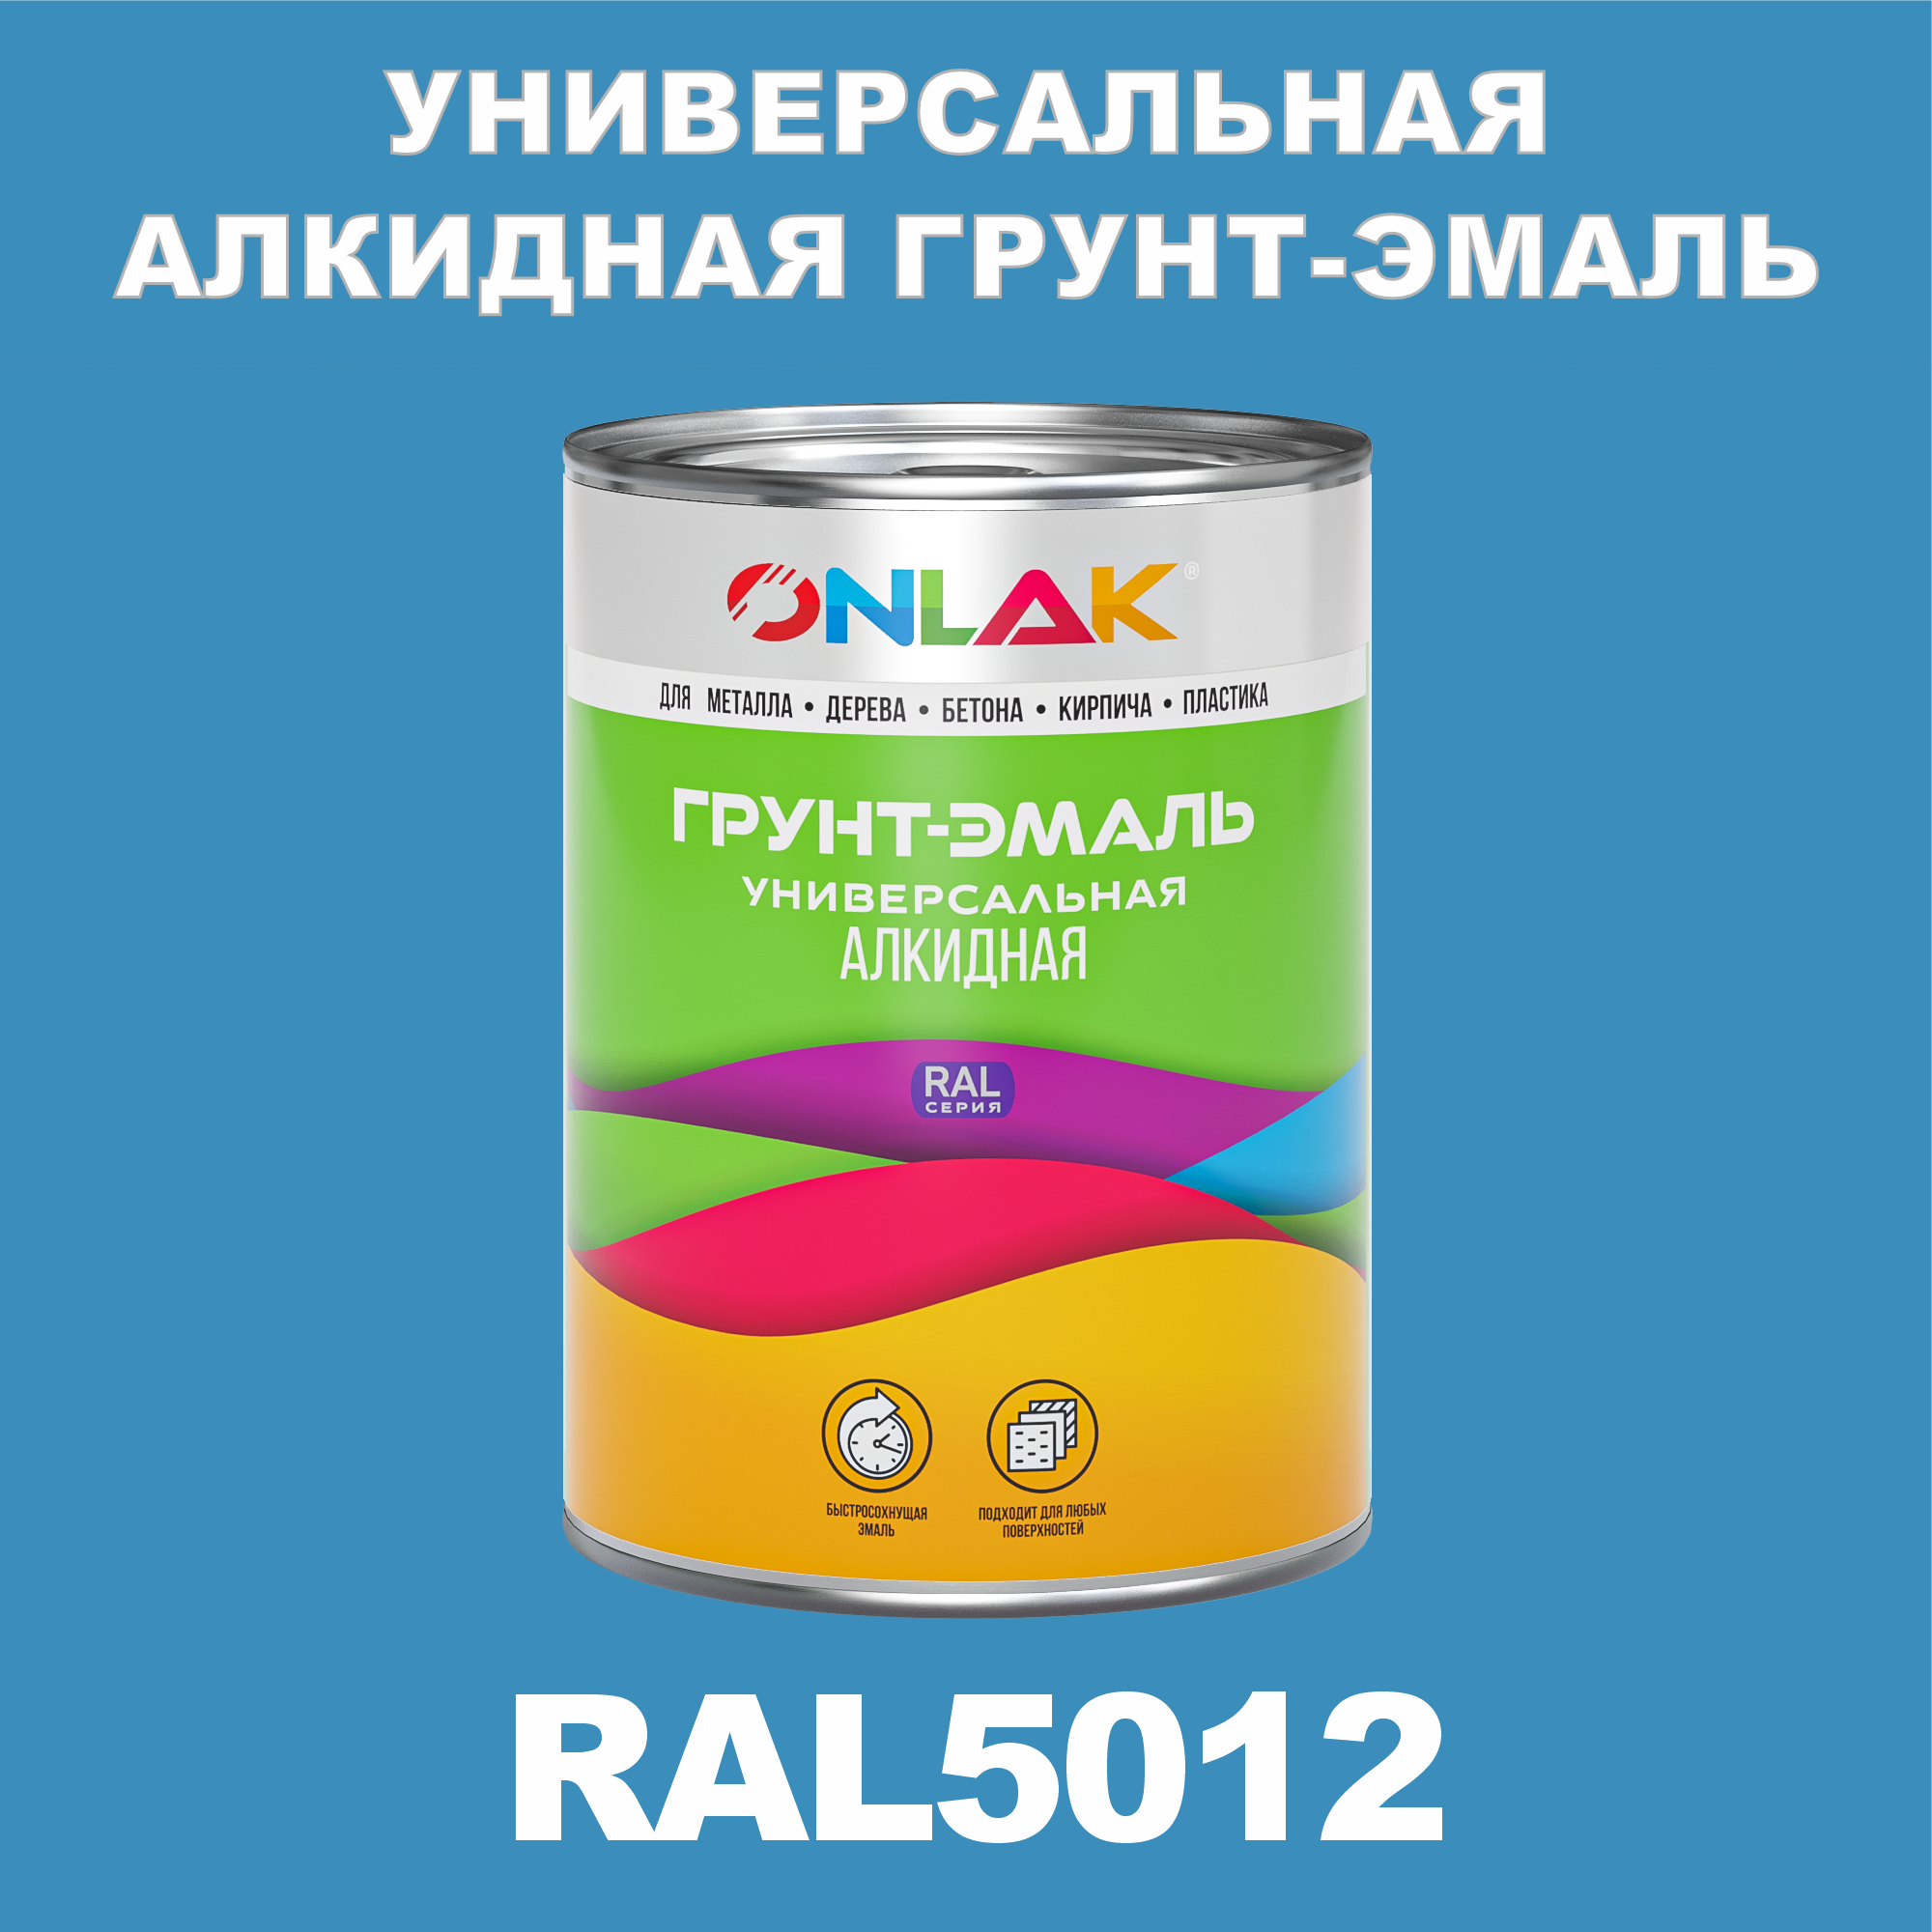 Грунт-эмаль ONLAK 1К RAL5012 антикоррозионная алкидная по металлу по ржавчине 1 кг грунт эмаль аэрозольная престиж 3в1 алкидная коричневая ral 8017 425 мл 0 425 кг